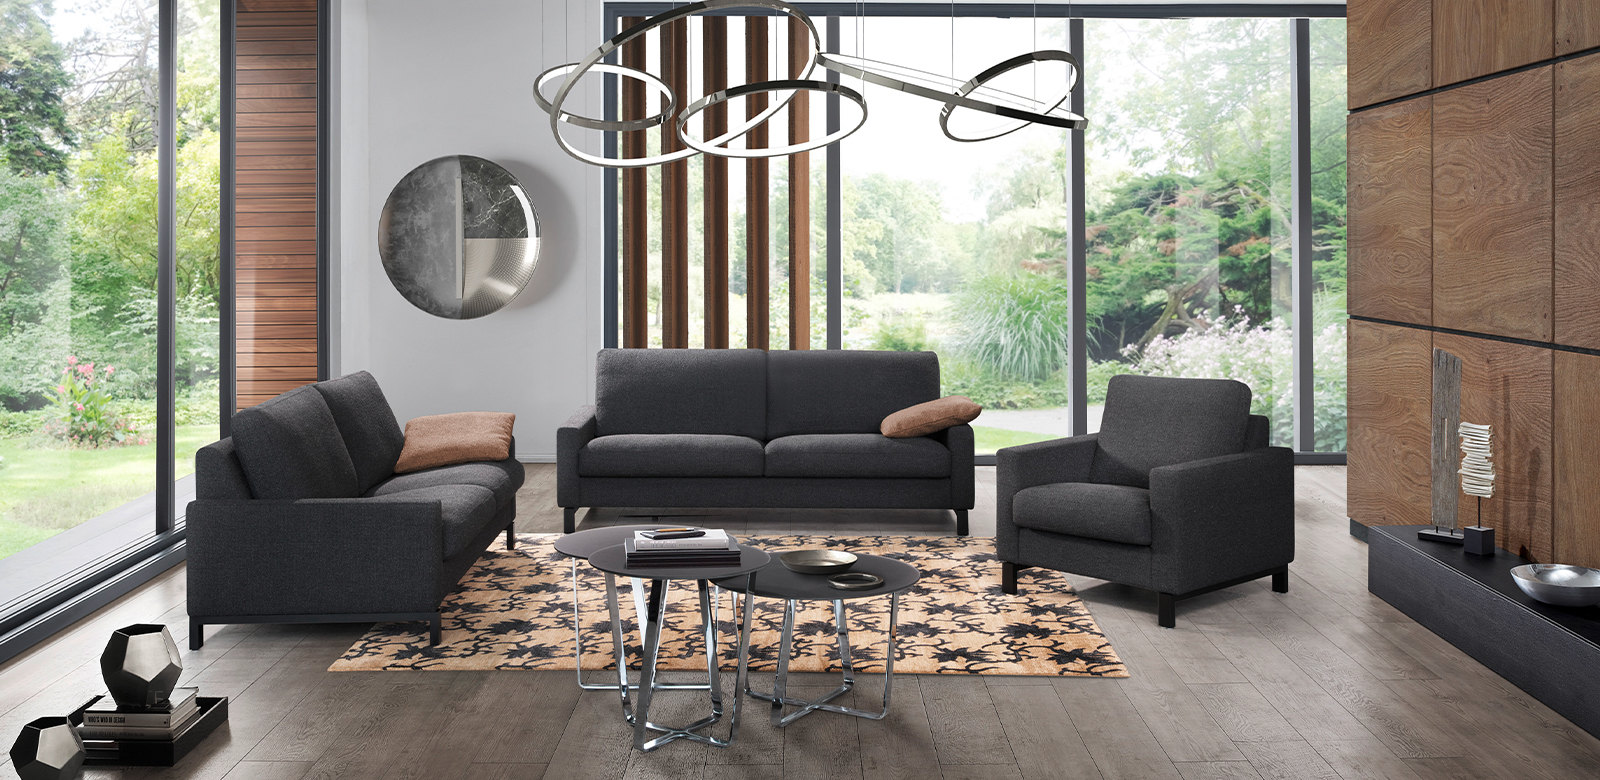 Moderne woonkamer met houten elementen en twee CL500 banken en fauteuils in grijs-zwarte stof.